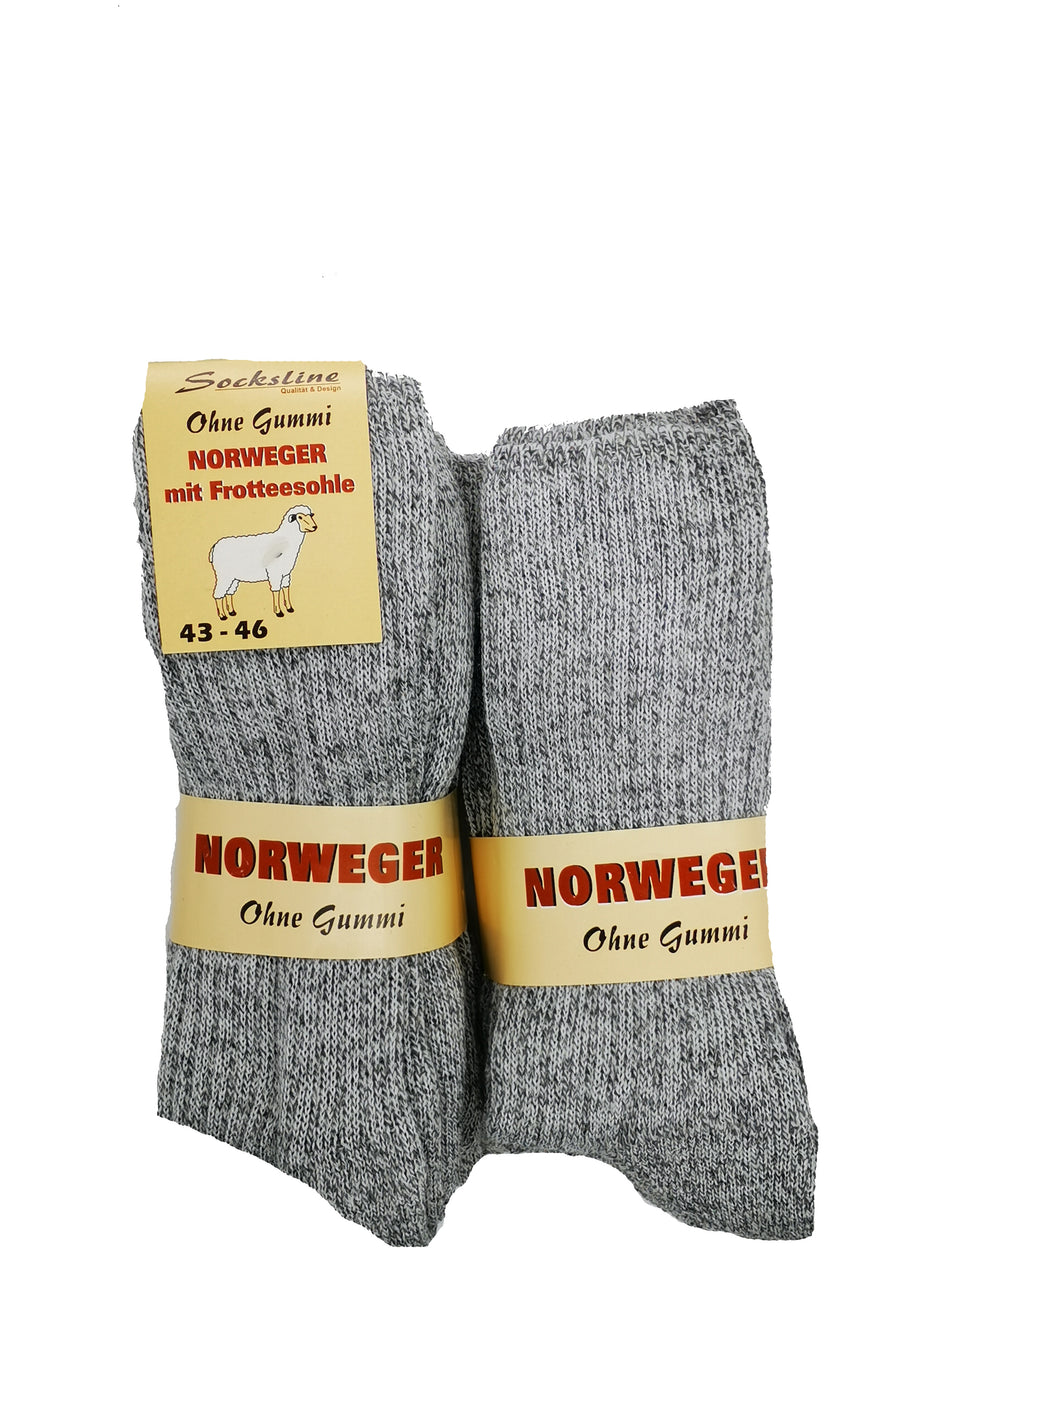 Herren Norweger Socken ohne Gummi 72% Wolle mit Frotteesohle 3 oder 6 Paar